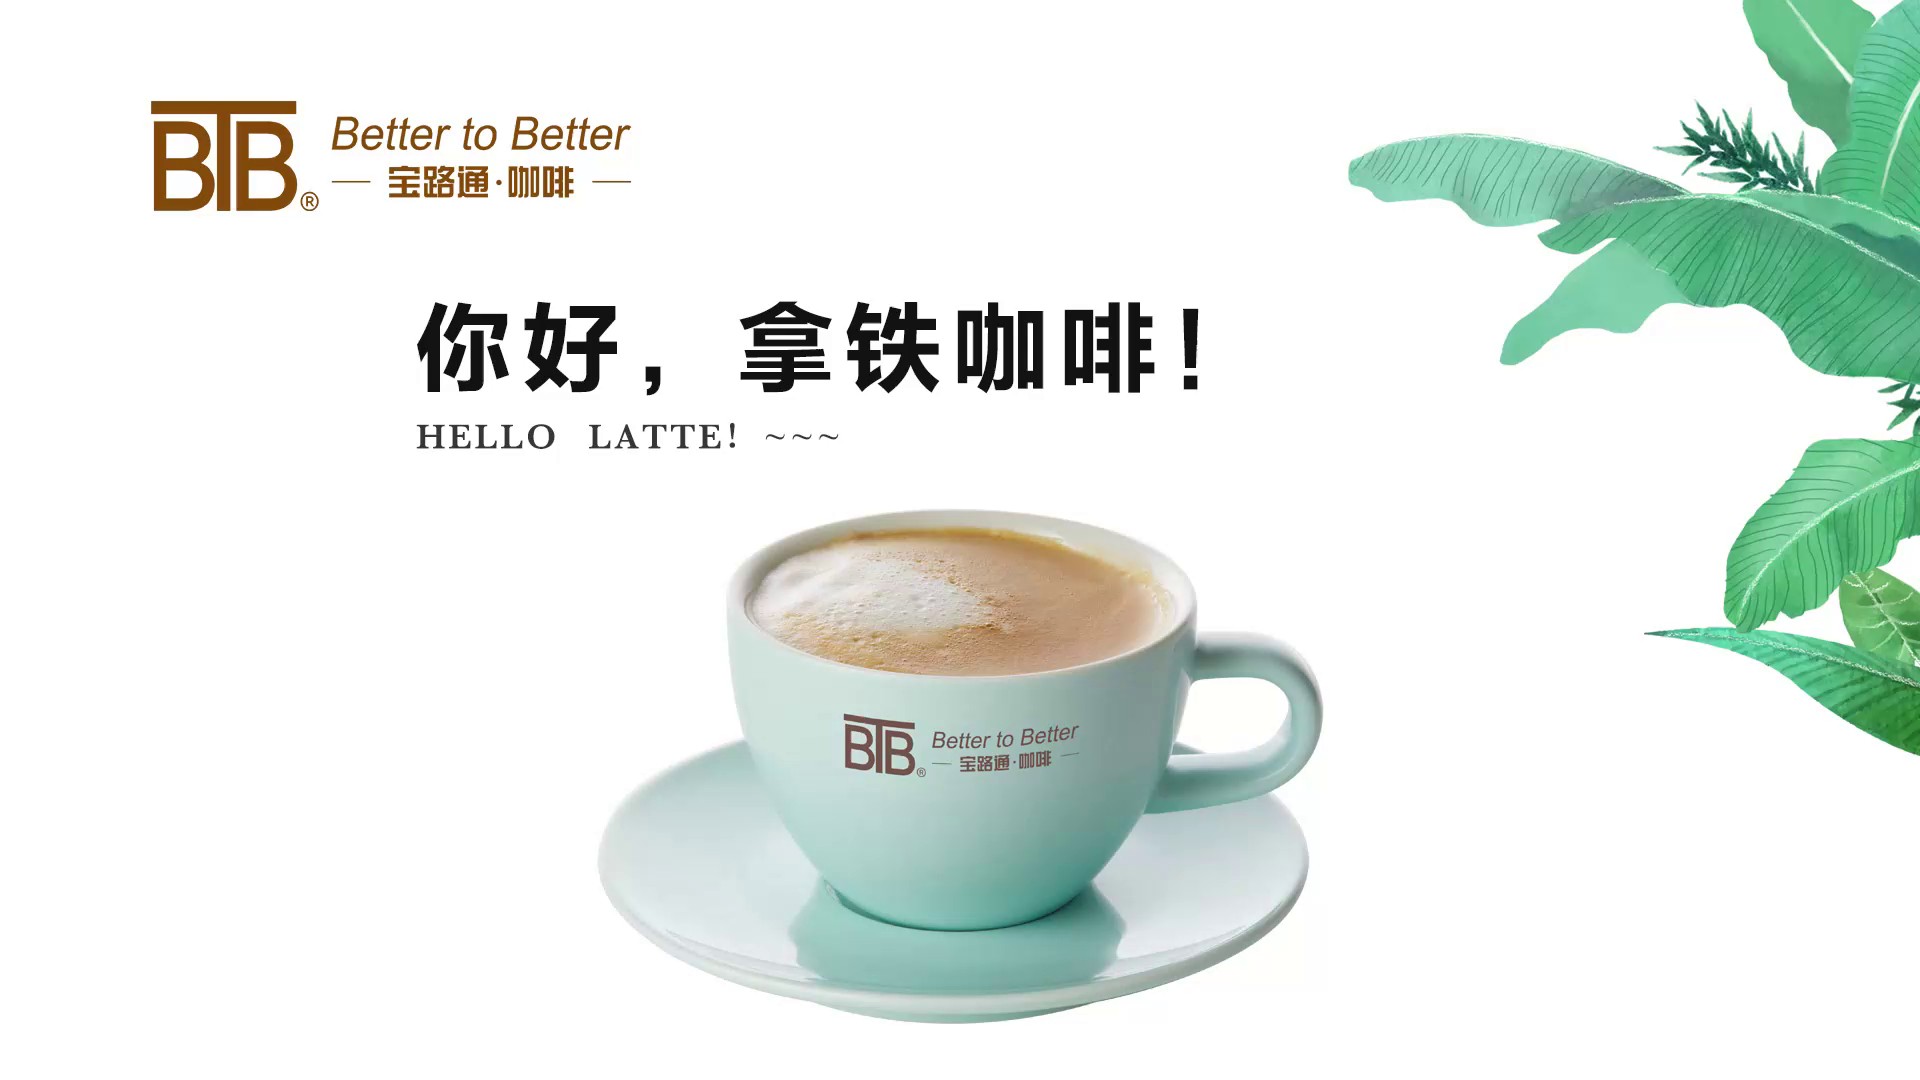 杨浦区全自动咖啡机哪家好,咖啡机